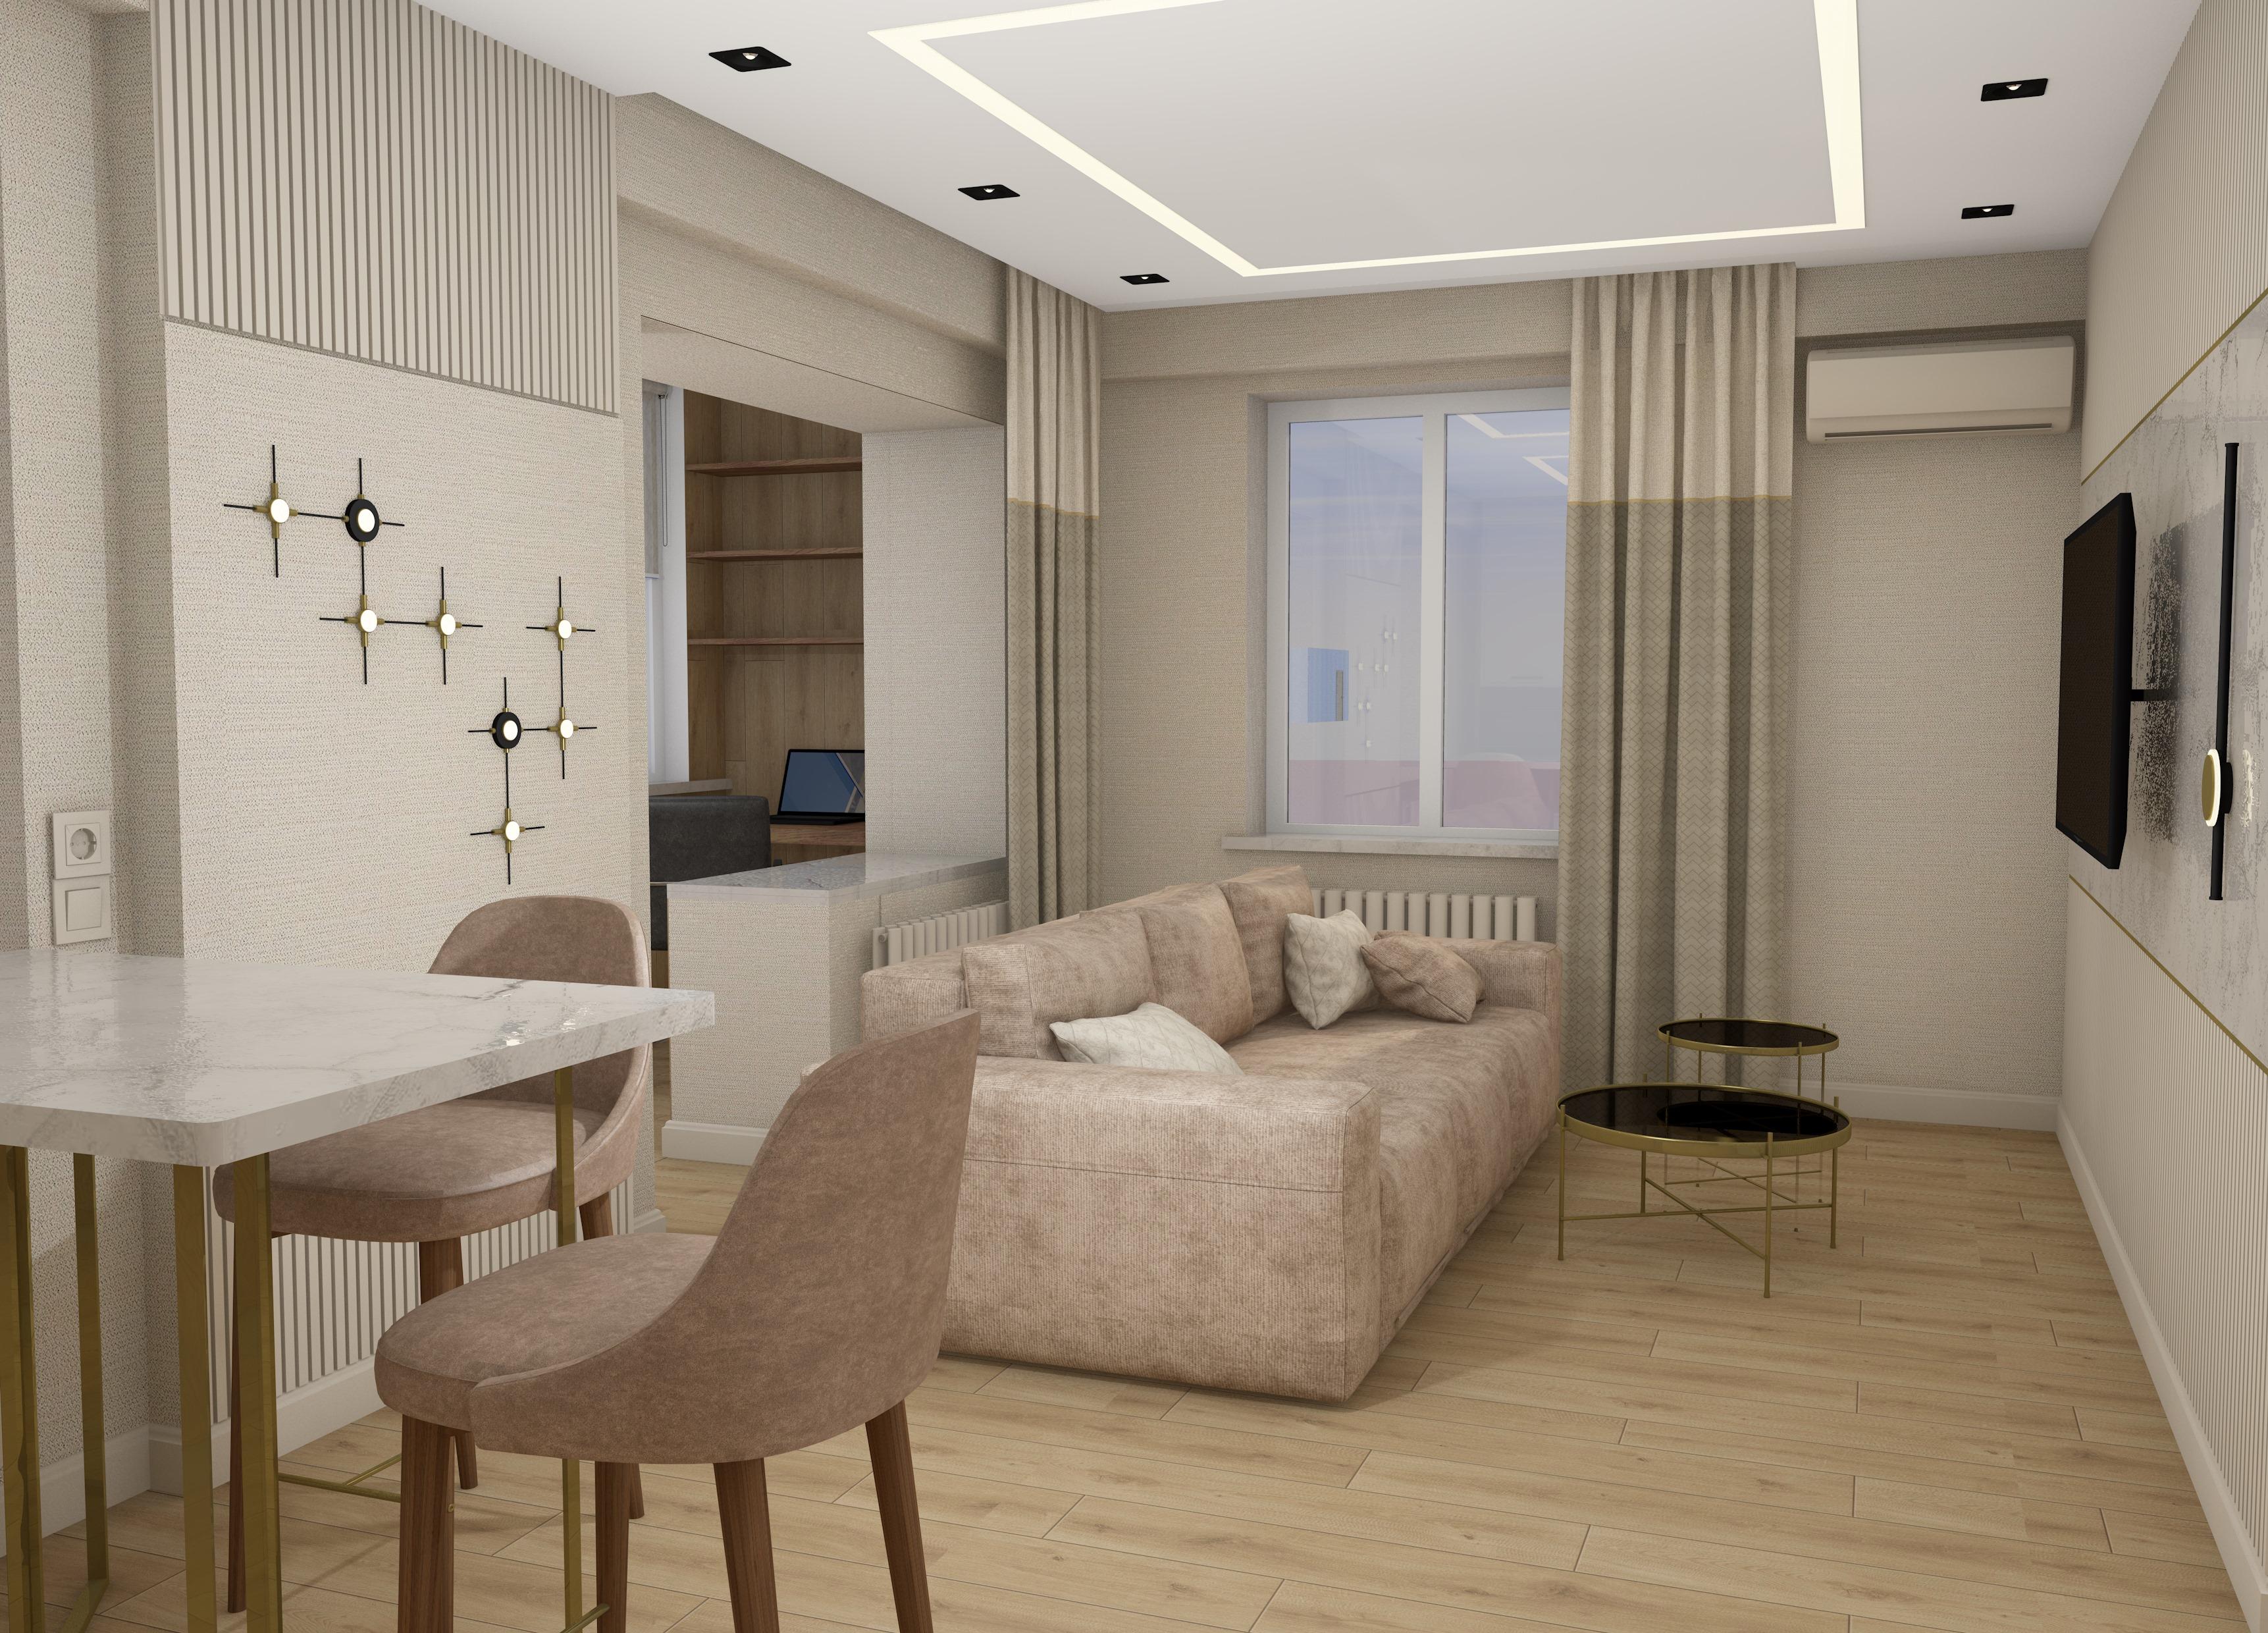 Интерьер гостиной с рейками с подсветкой, подсветкой настенной, подсветкой светодиодной и с подсветкой